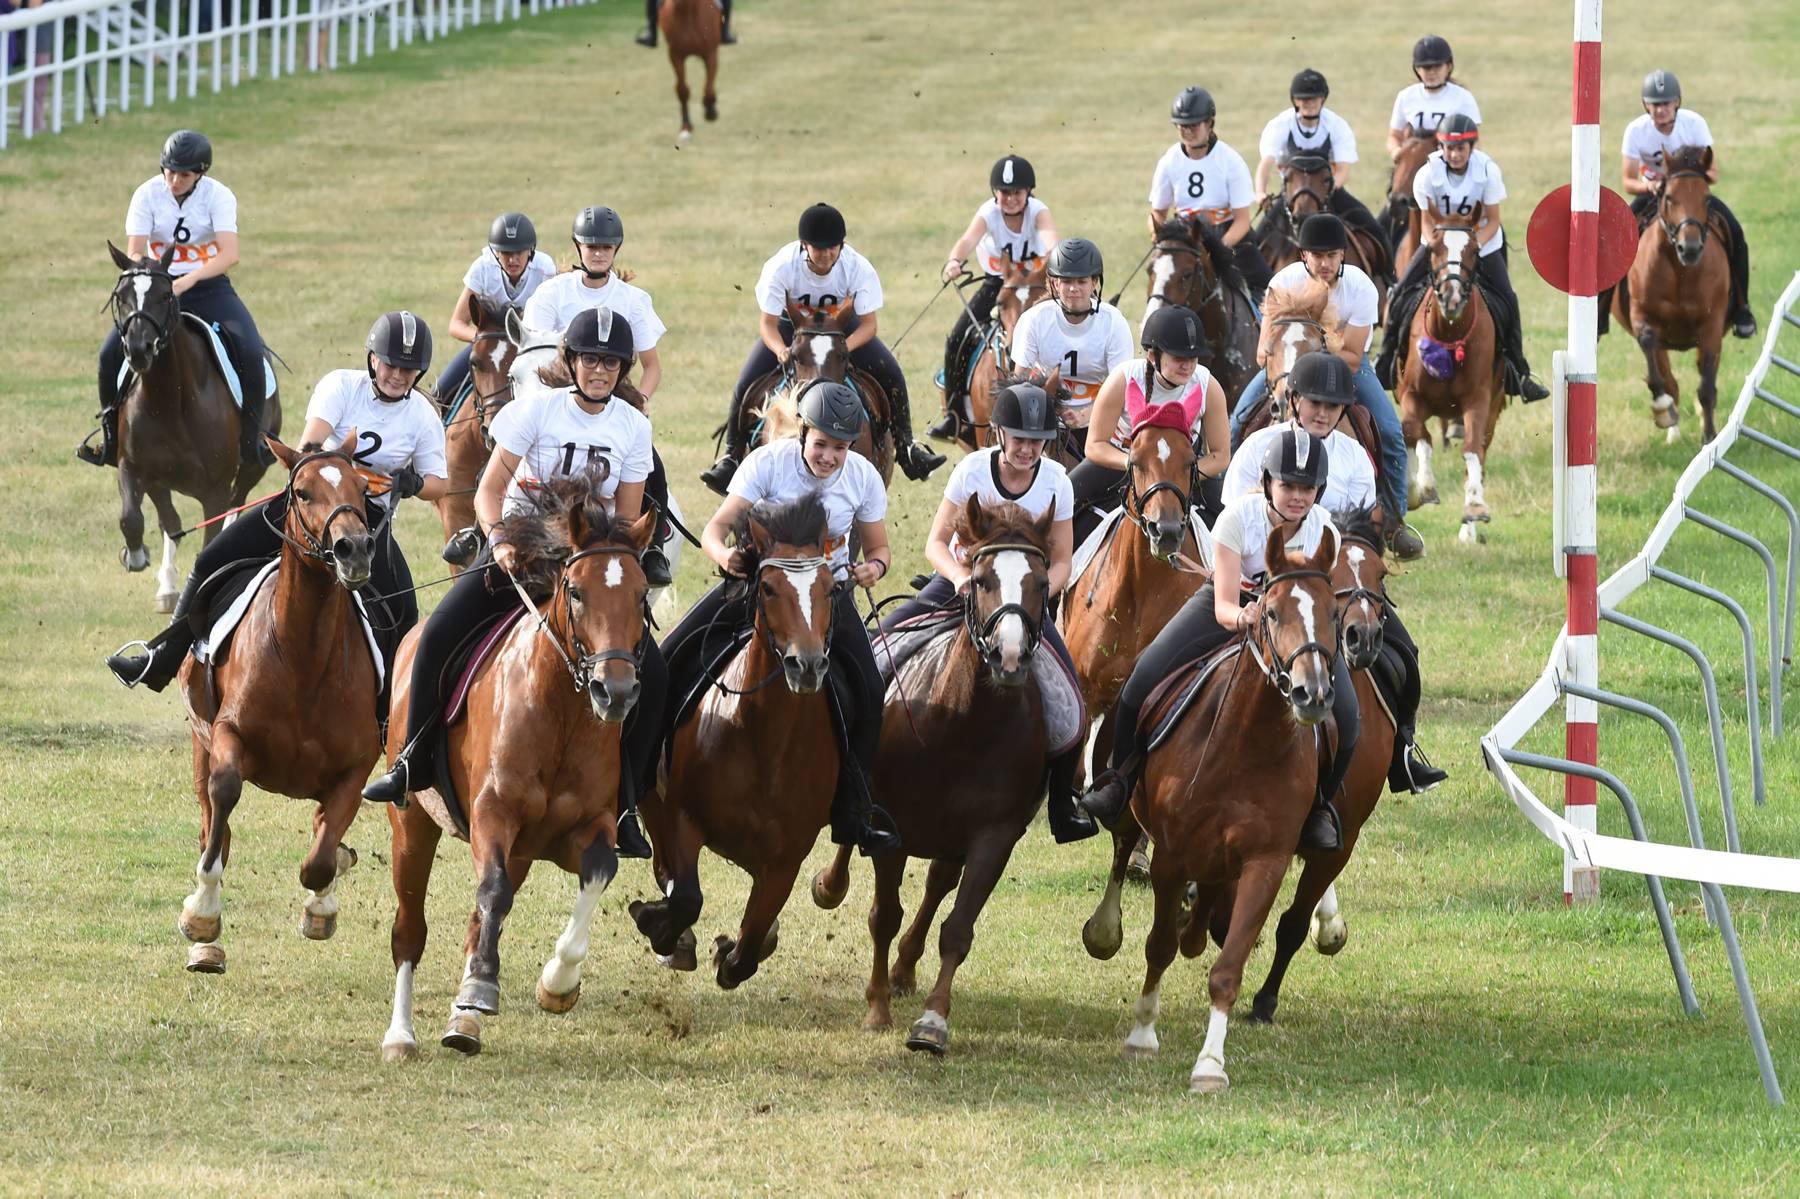 Marché-Concours national de chevaux de la race franches-montagnes: une course du vendredi soir 9 août 2019.